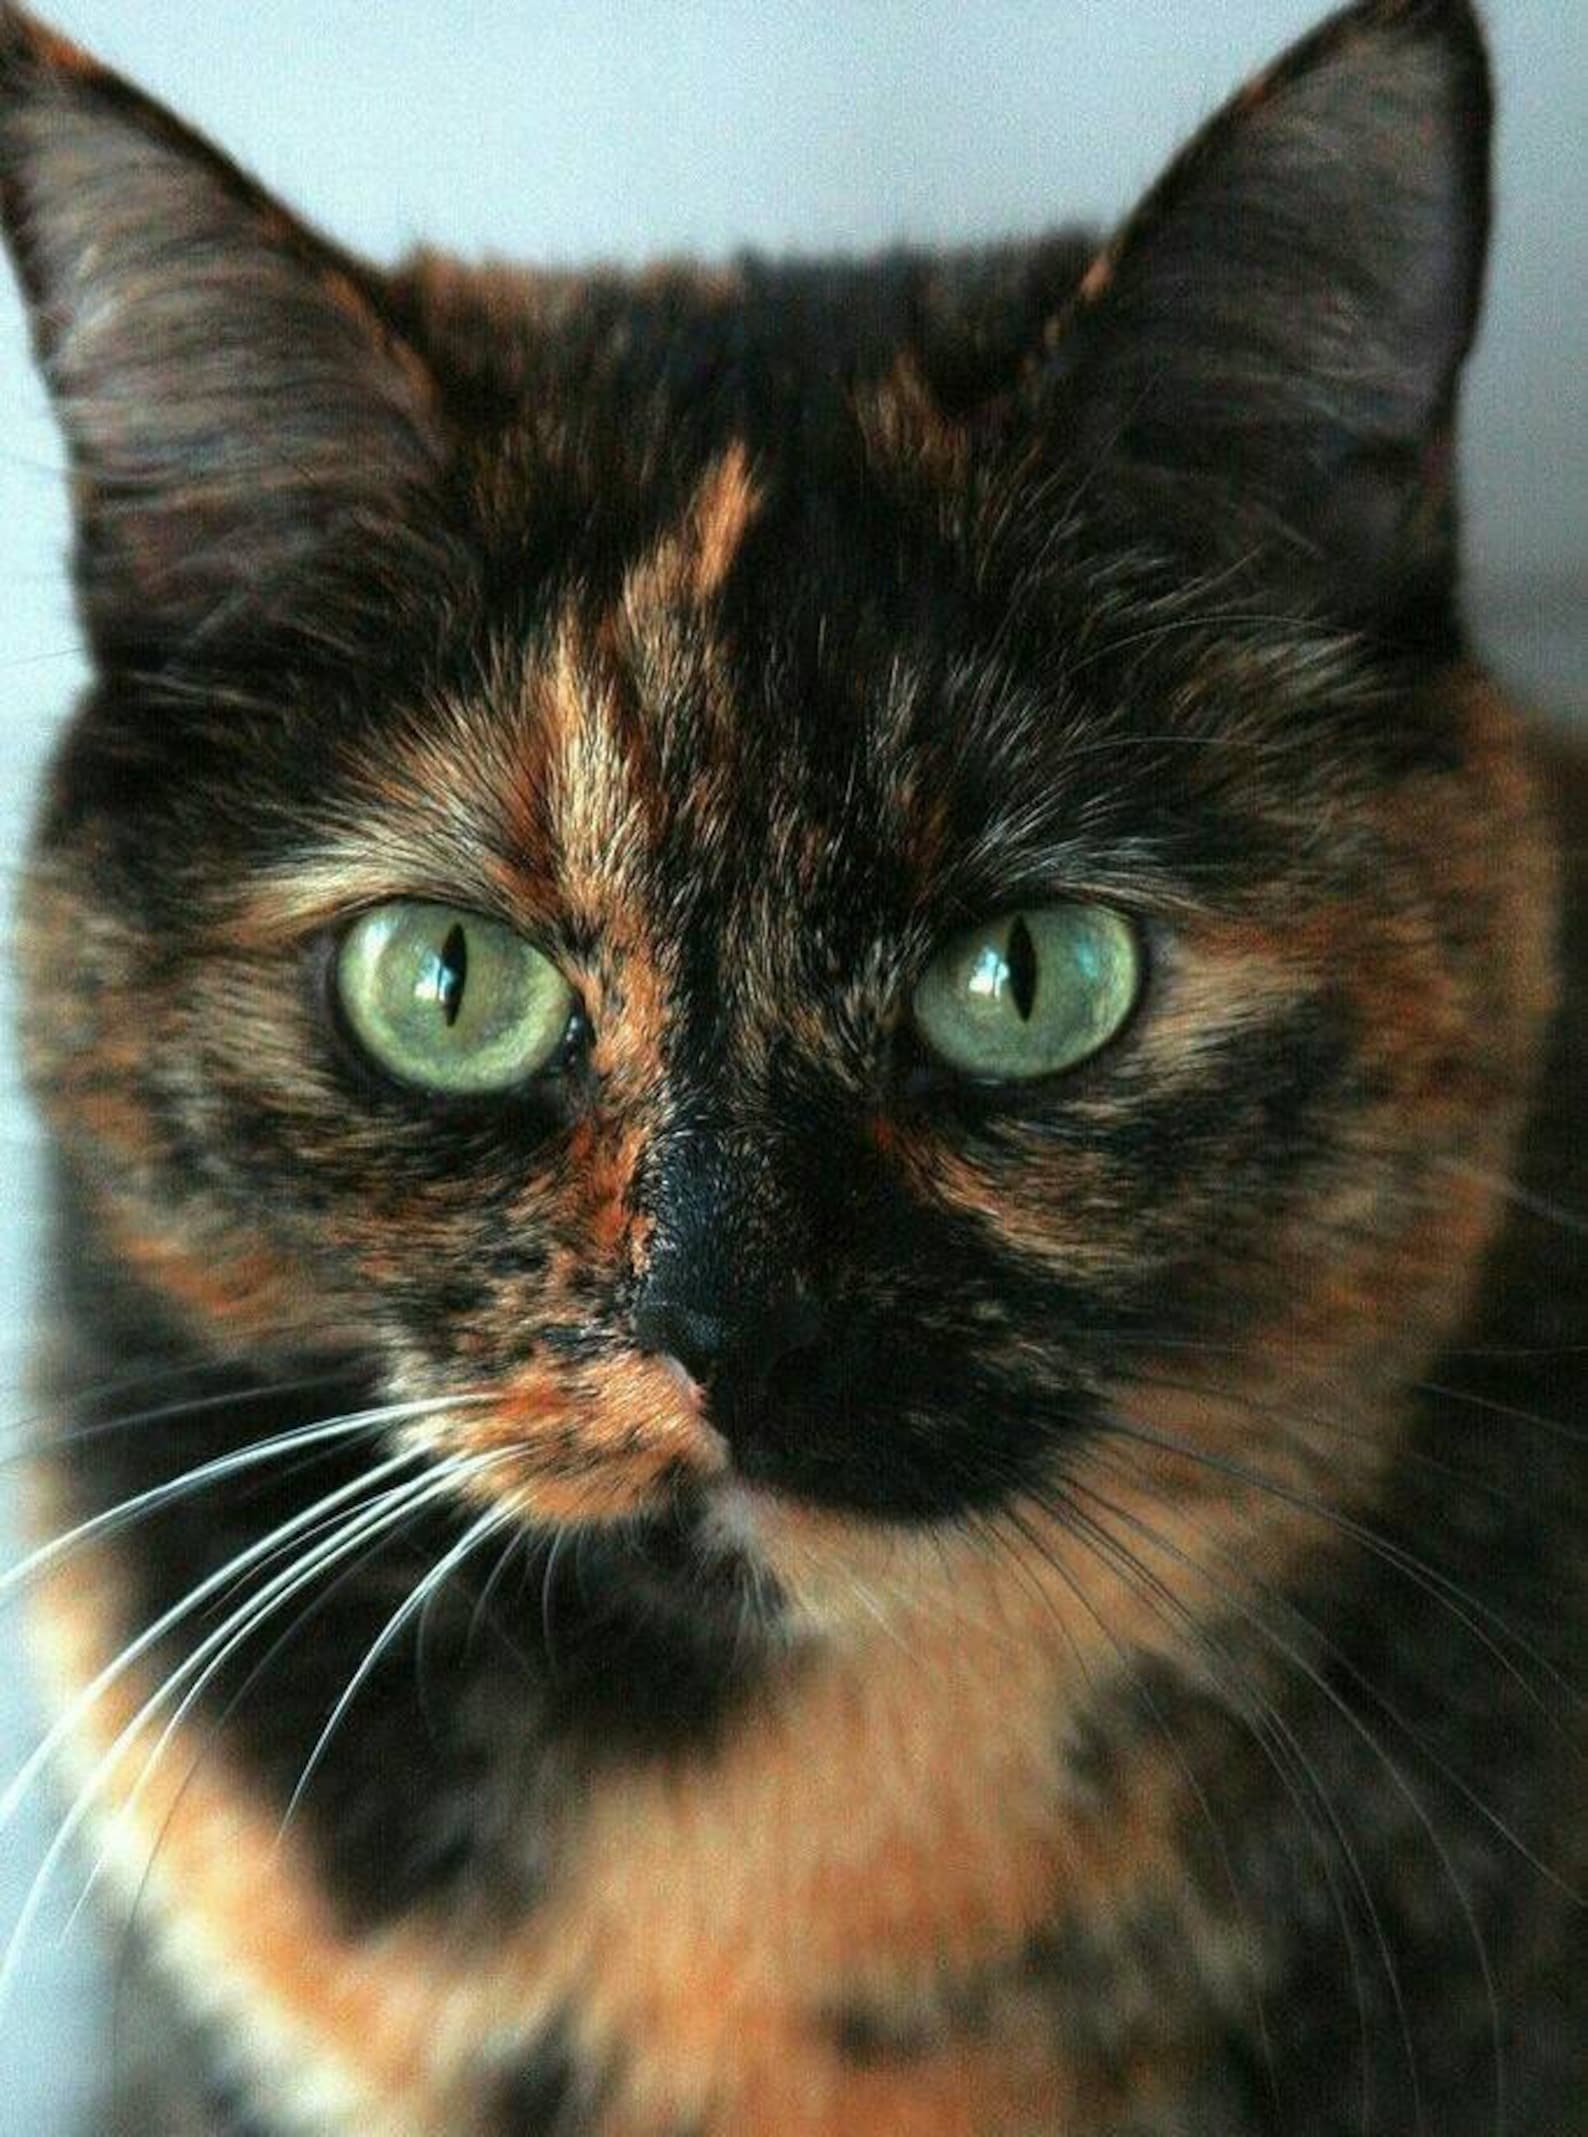 Кошка черная с рыжими пятнами порода. Черепаховая кошка Калико. Бурая черепаховая кошка. Рыжий кот с черепаховым окрасом. Трехцветная черепаховая кошка.